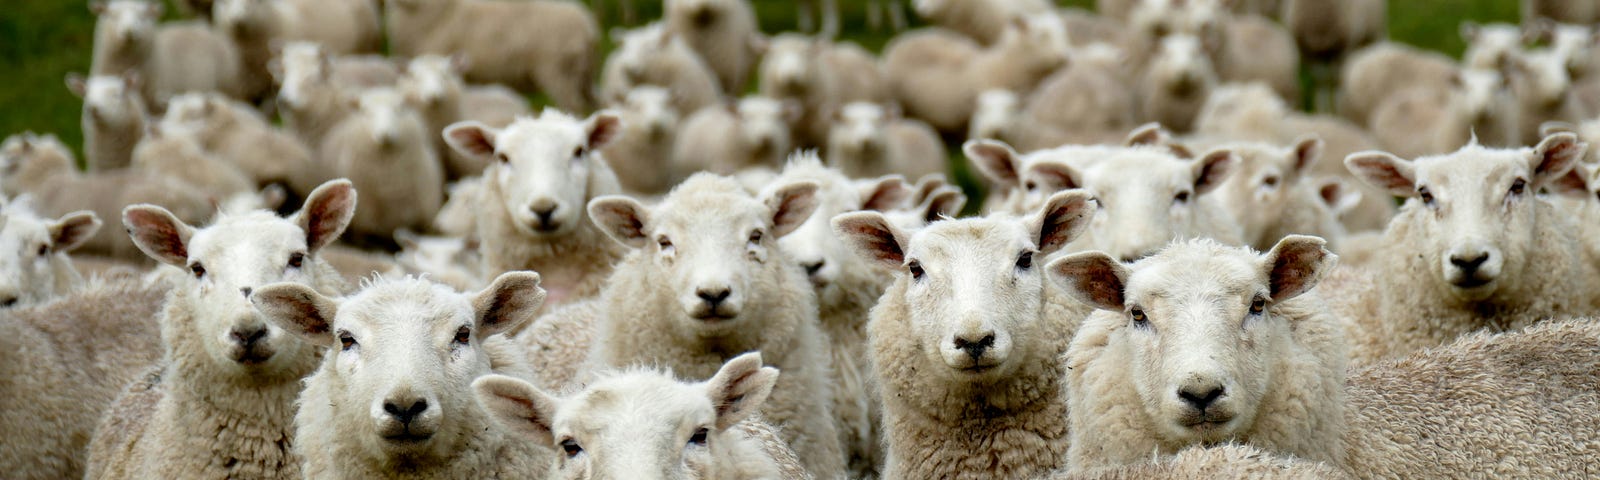 a group of sheep staring at the camera